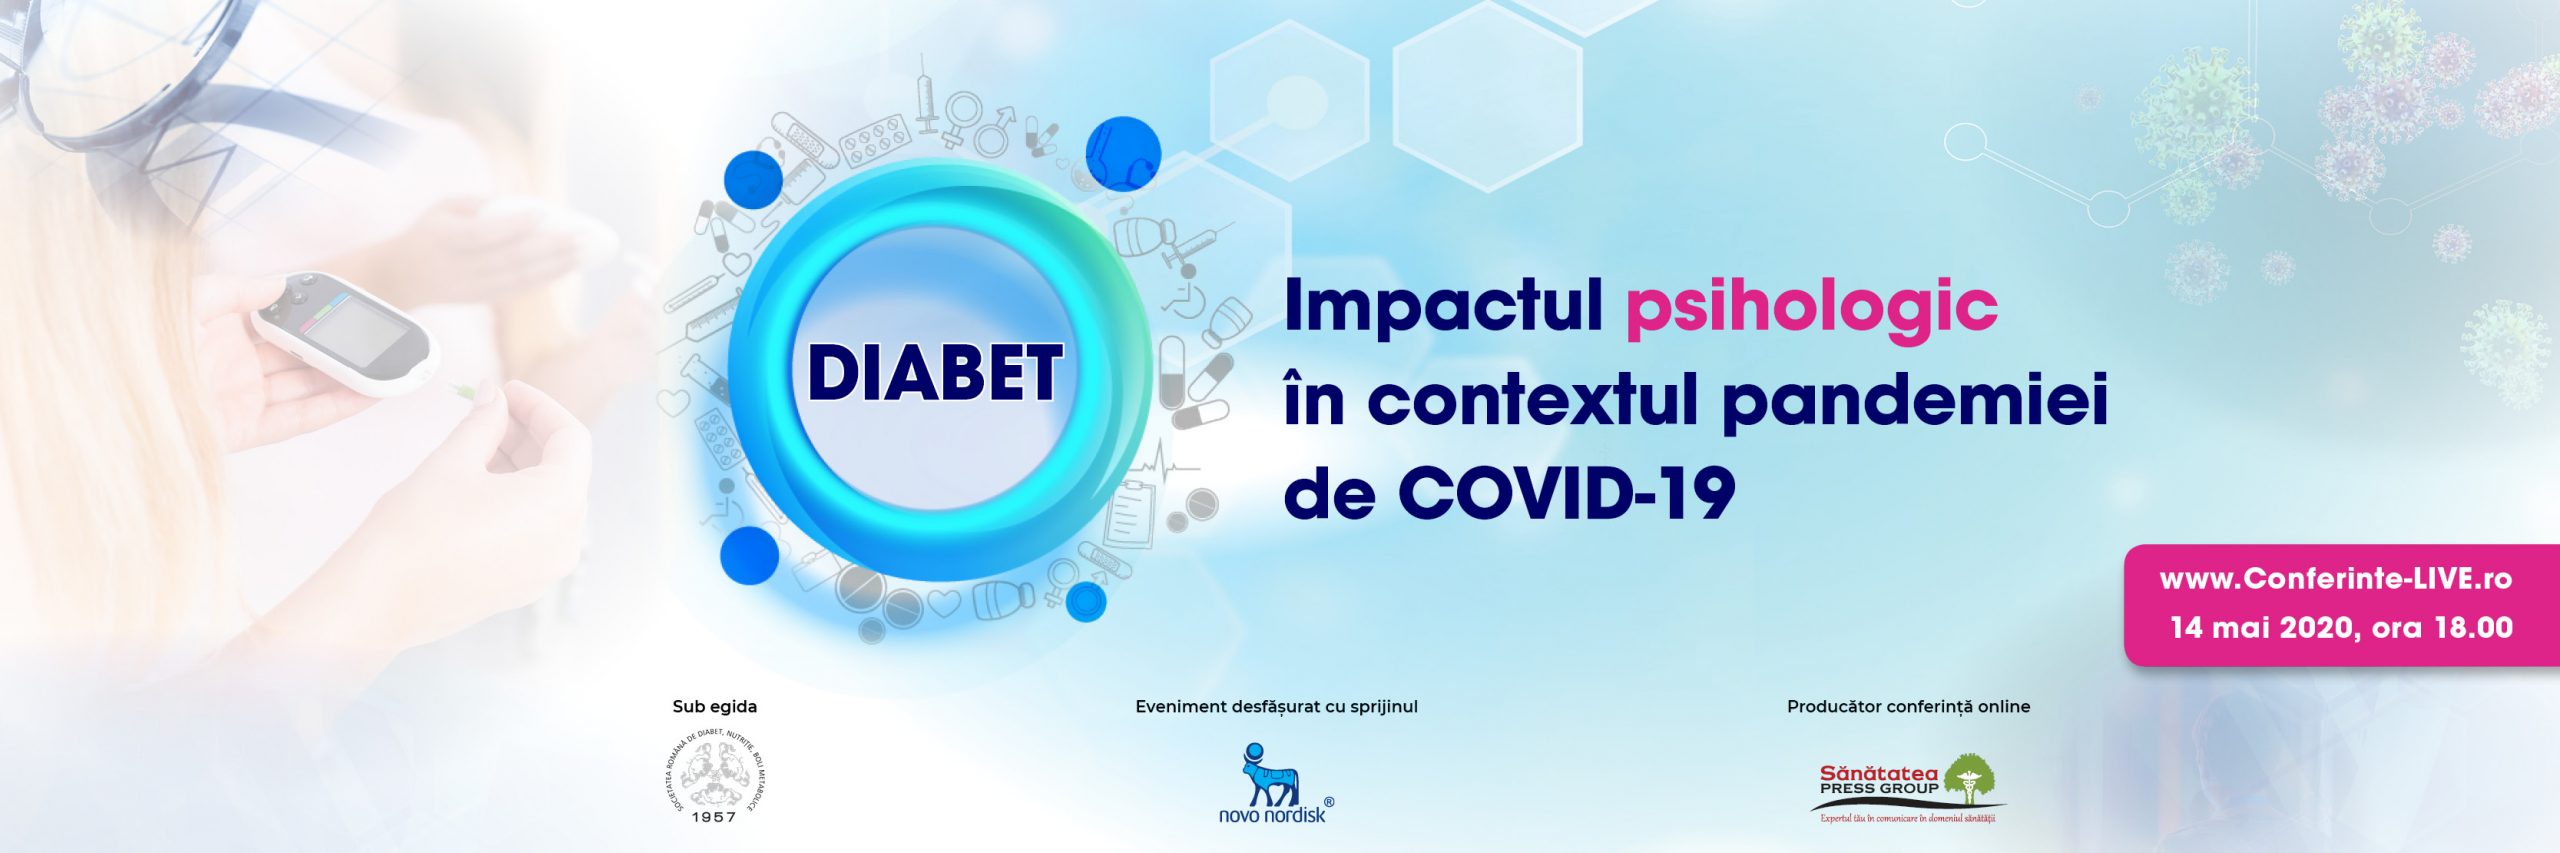 DIABETUL ȘI PERSOANA CU DIABET în contextul pandemiei de COVID-19